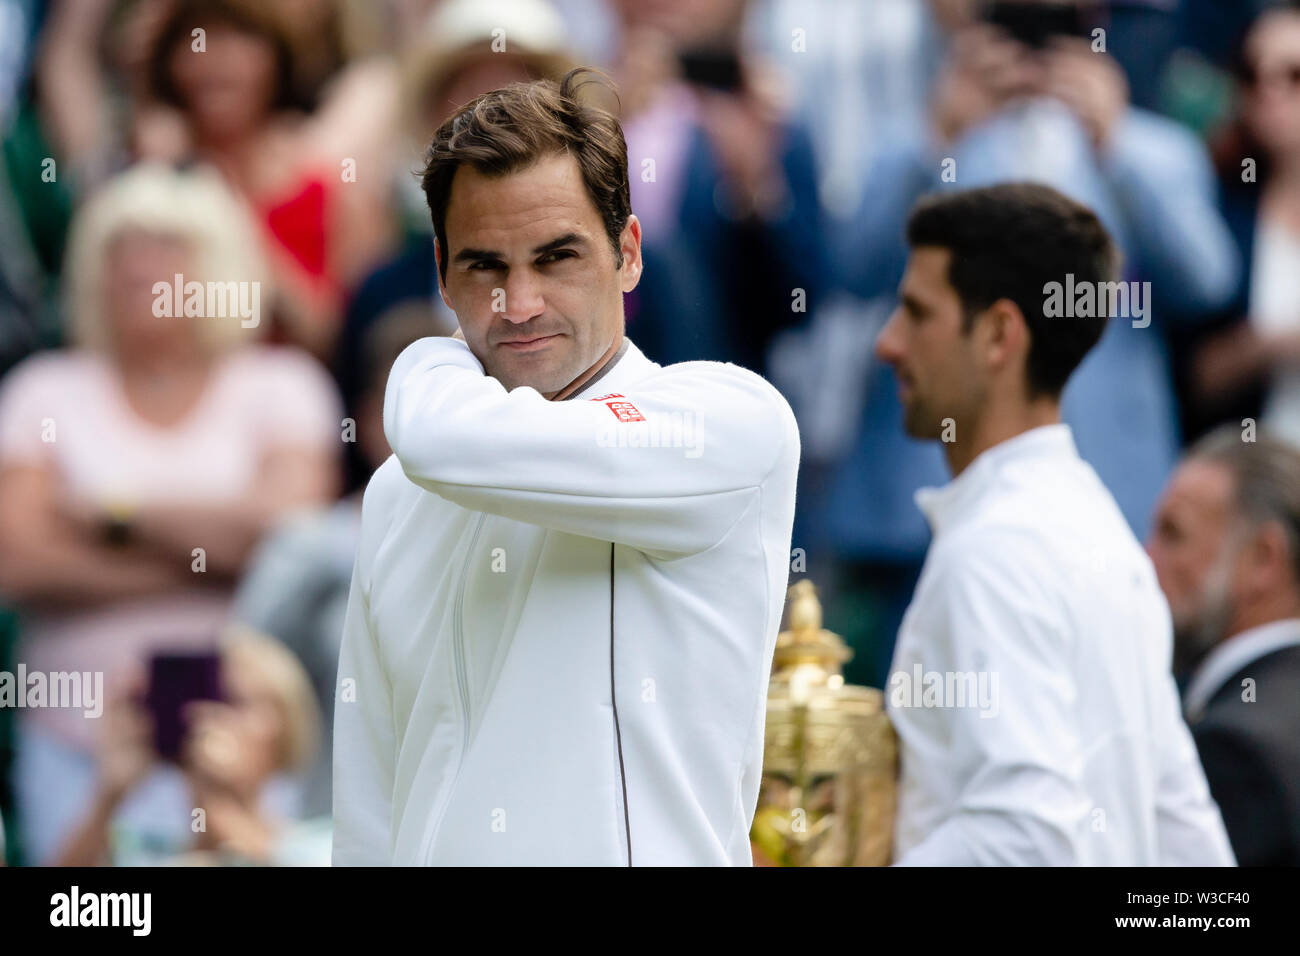 Londres, Reino Unido, 14 de julio de 2019: Roger Federer de Suiza está en acción durante la final masculina de Wimbledon 2019 en el All England Lawn Tennis y Croquet Club en Londres. Crédito: Frank Molter/Alamy Live News Foto de stock